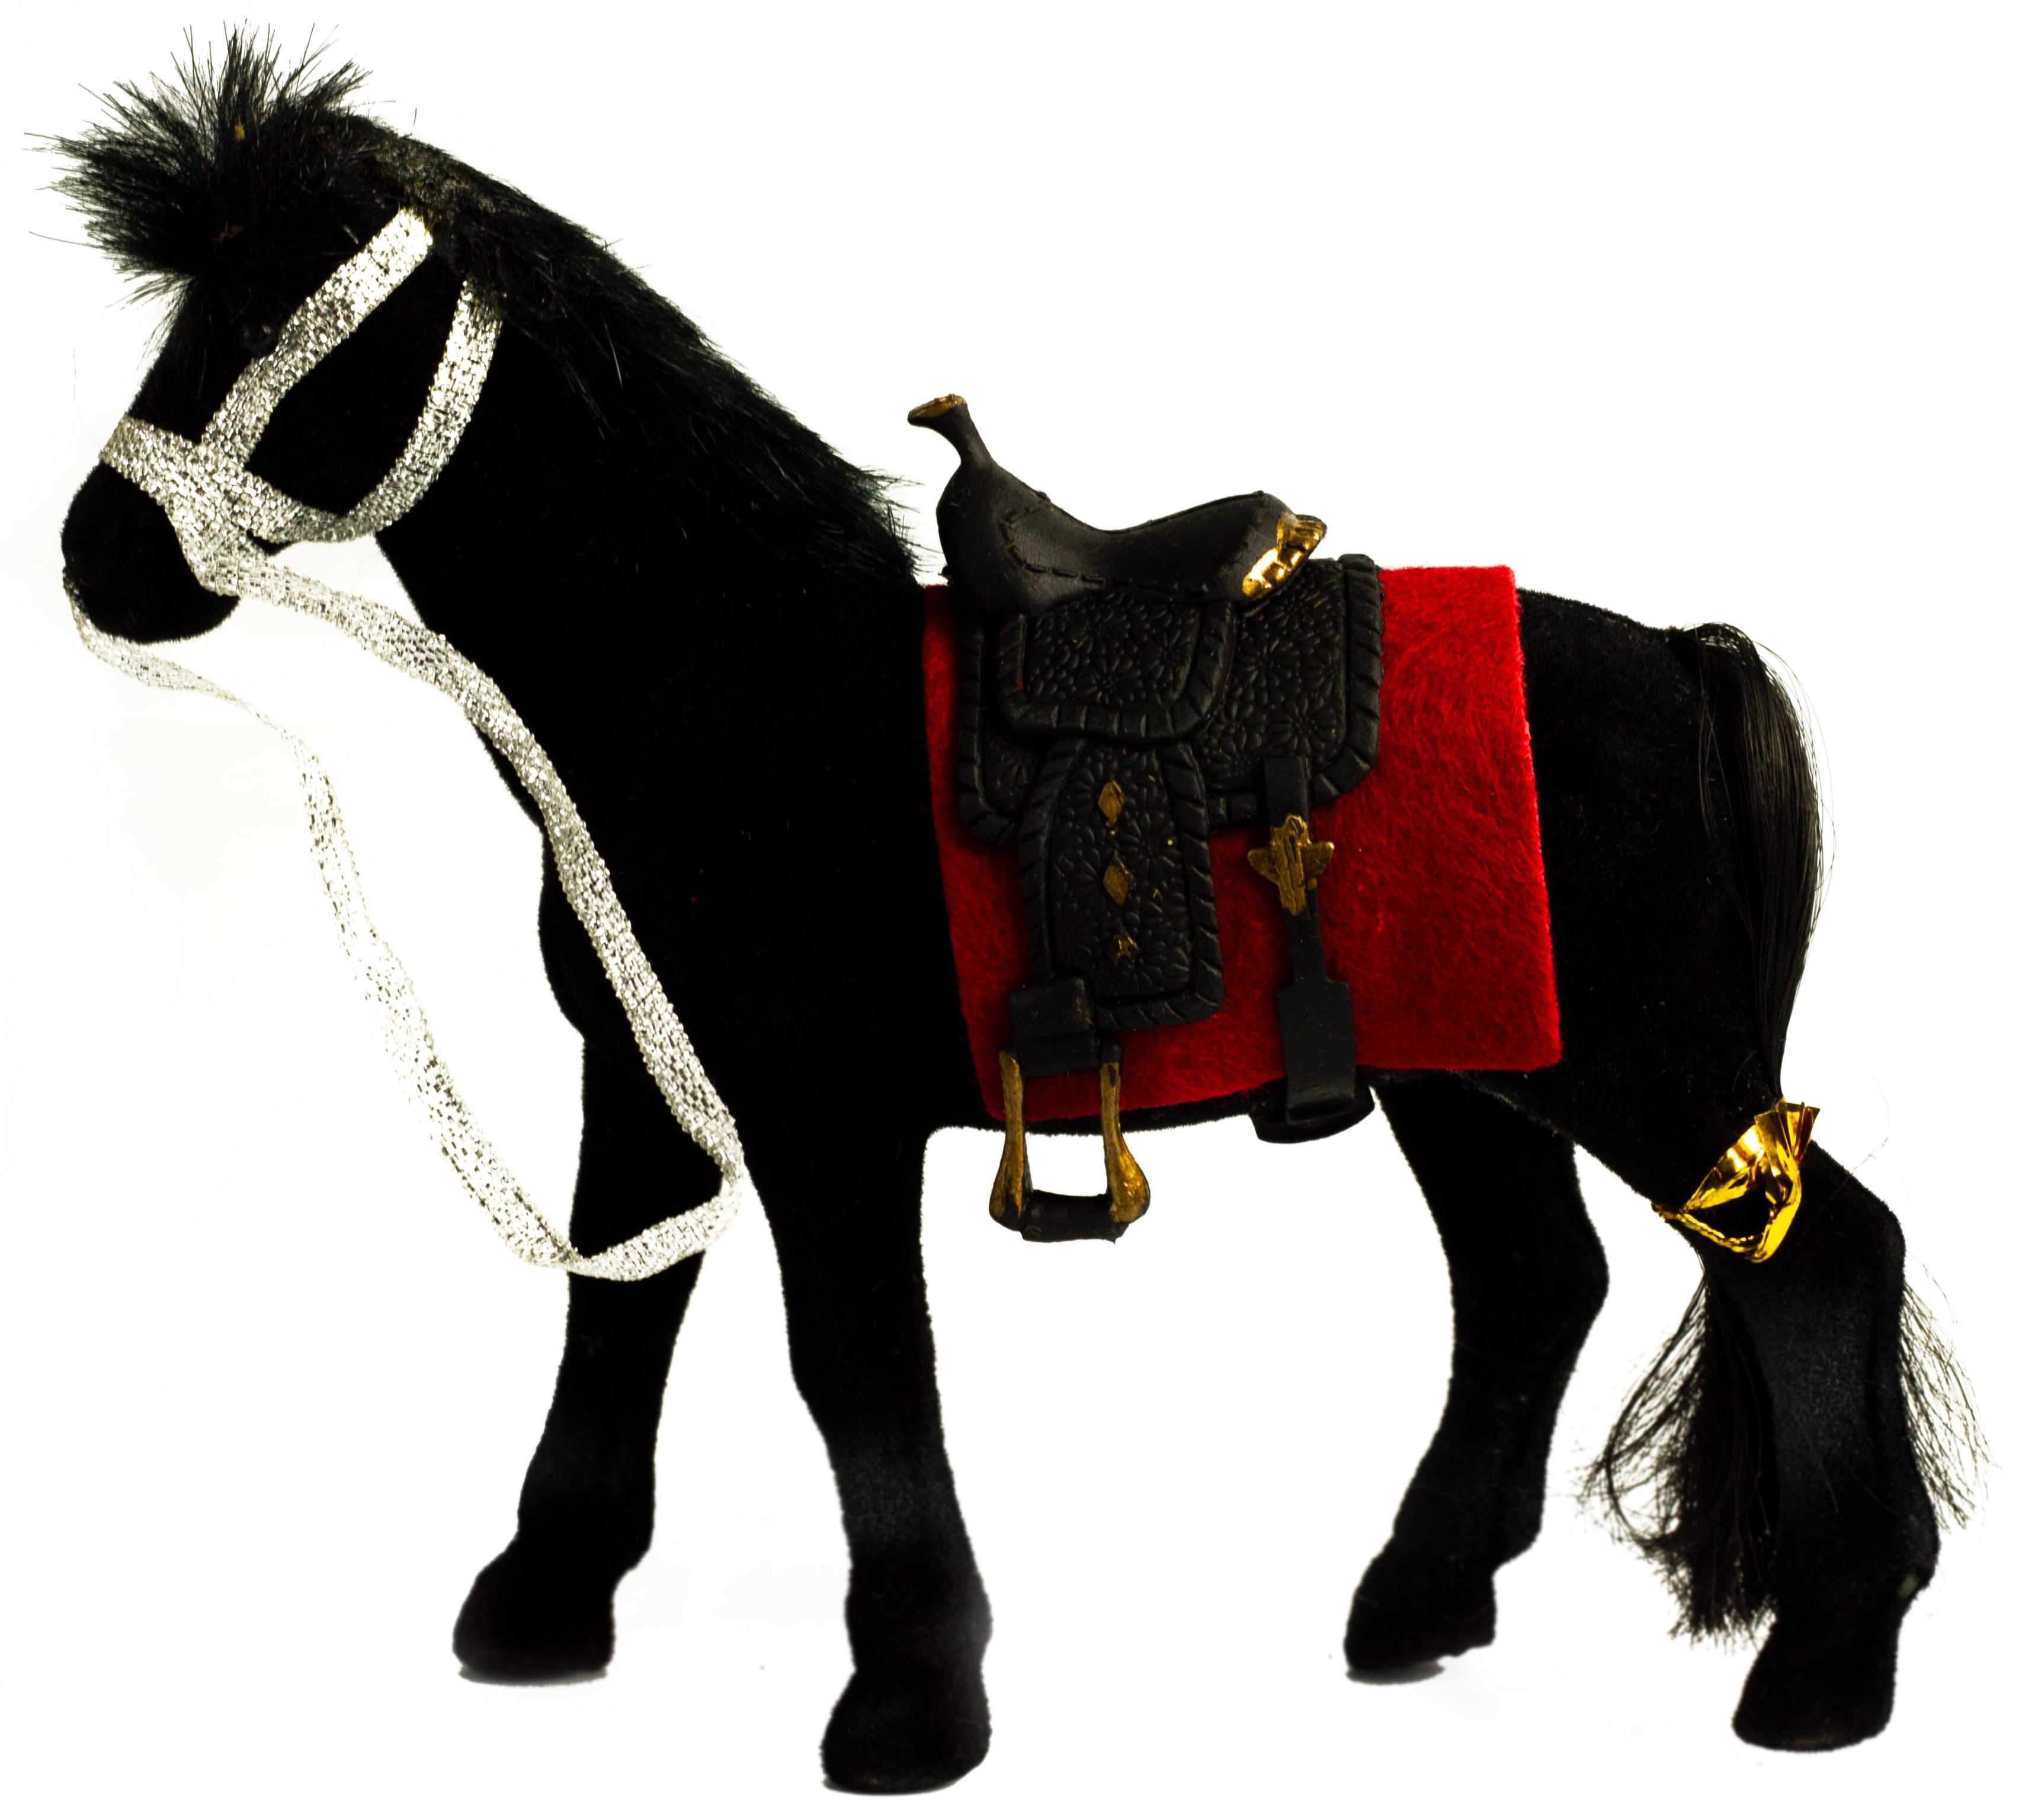 Детская кукольная игрушечная фигурка-лошадка Play Smart «Сивка-бурка» 2545, для девочек, 15 см. / Микс